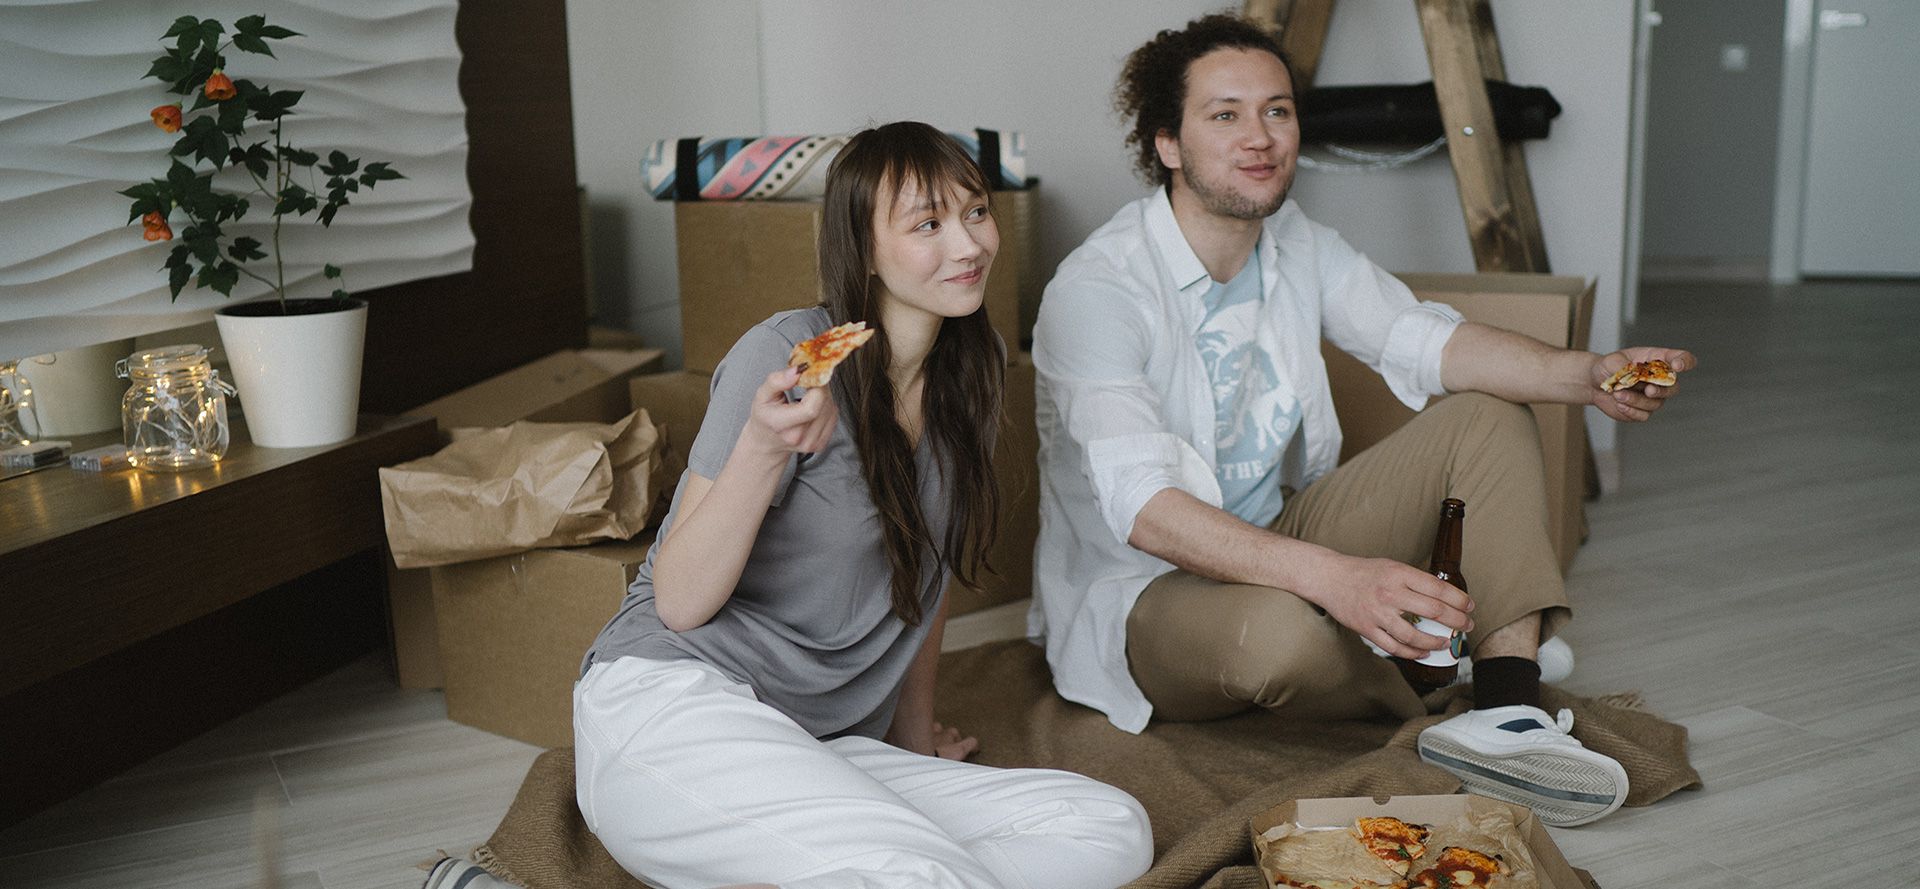 Pizza de casal numa data.